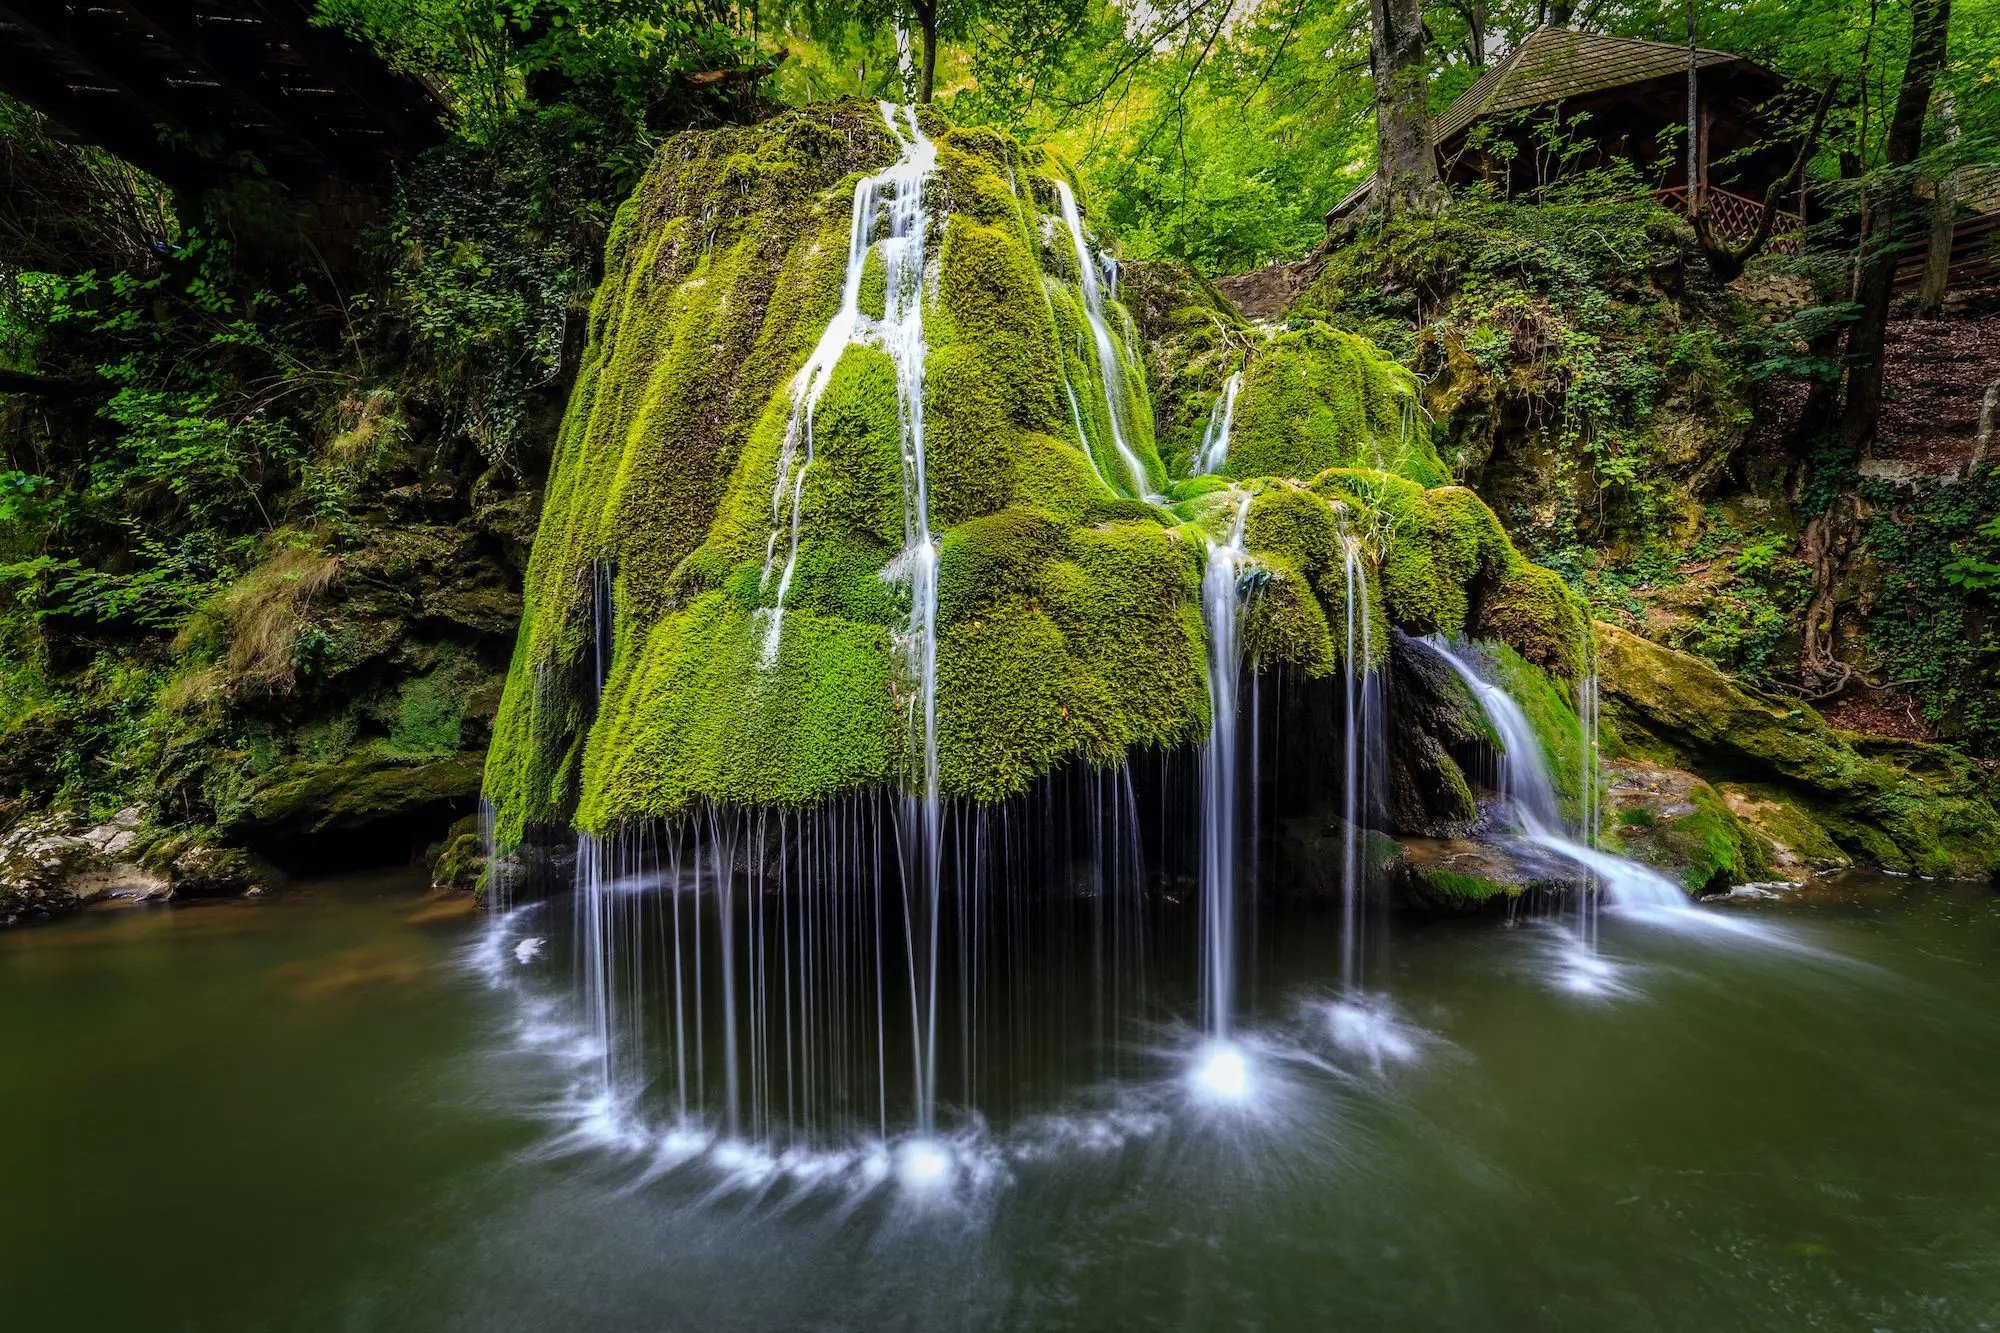 Wasserfall Bigar, Rumänien - Karten, Öffnungszeiten, Eintrittspreise ...